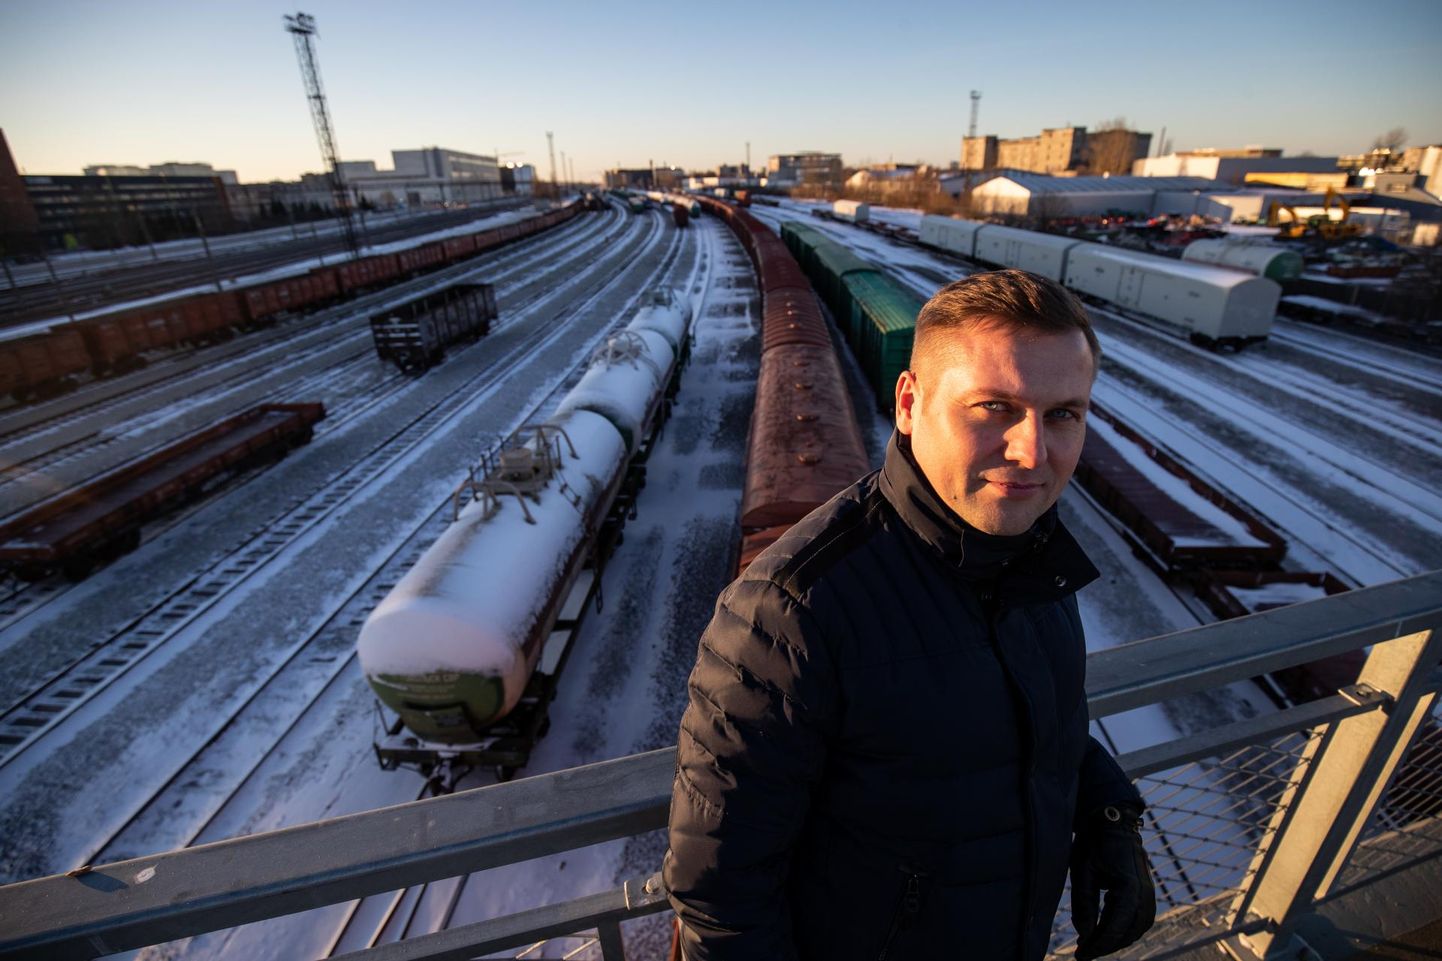 Руководитель Союза самоуправлений Харьюмаа Йоэль Йессе говорит, что окружная железная дорога не пустила бы российские грузовые поезда в городок Юлемисте, что позволило бы создать красивое городское пространство.